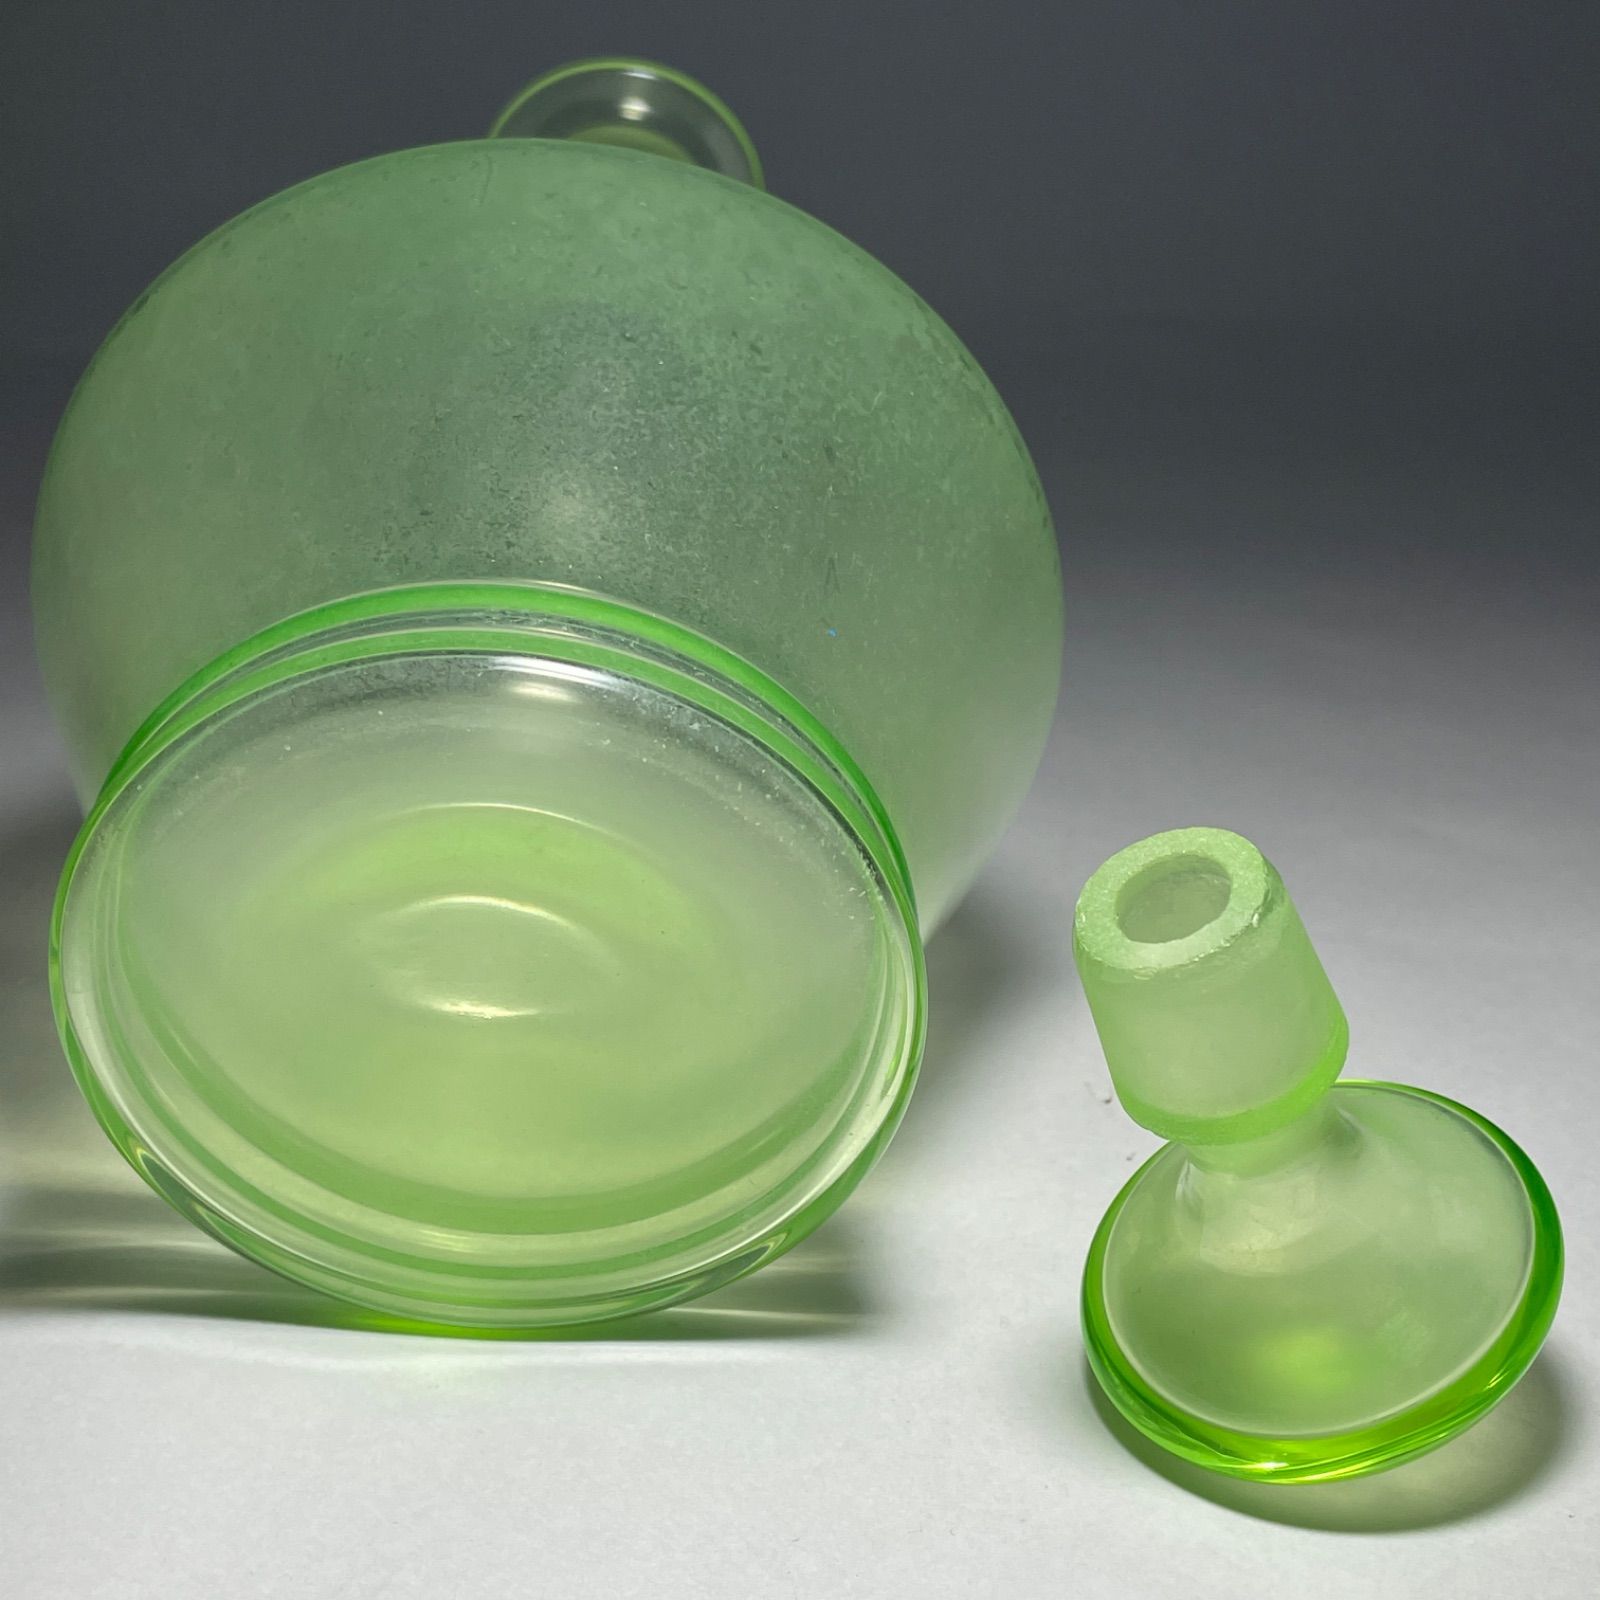 ◇ウランガラス② デキャンタ瓶 1900年代初頭 オランダ製 希少品 